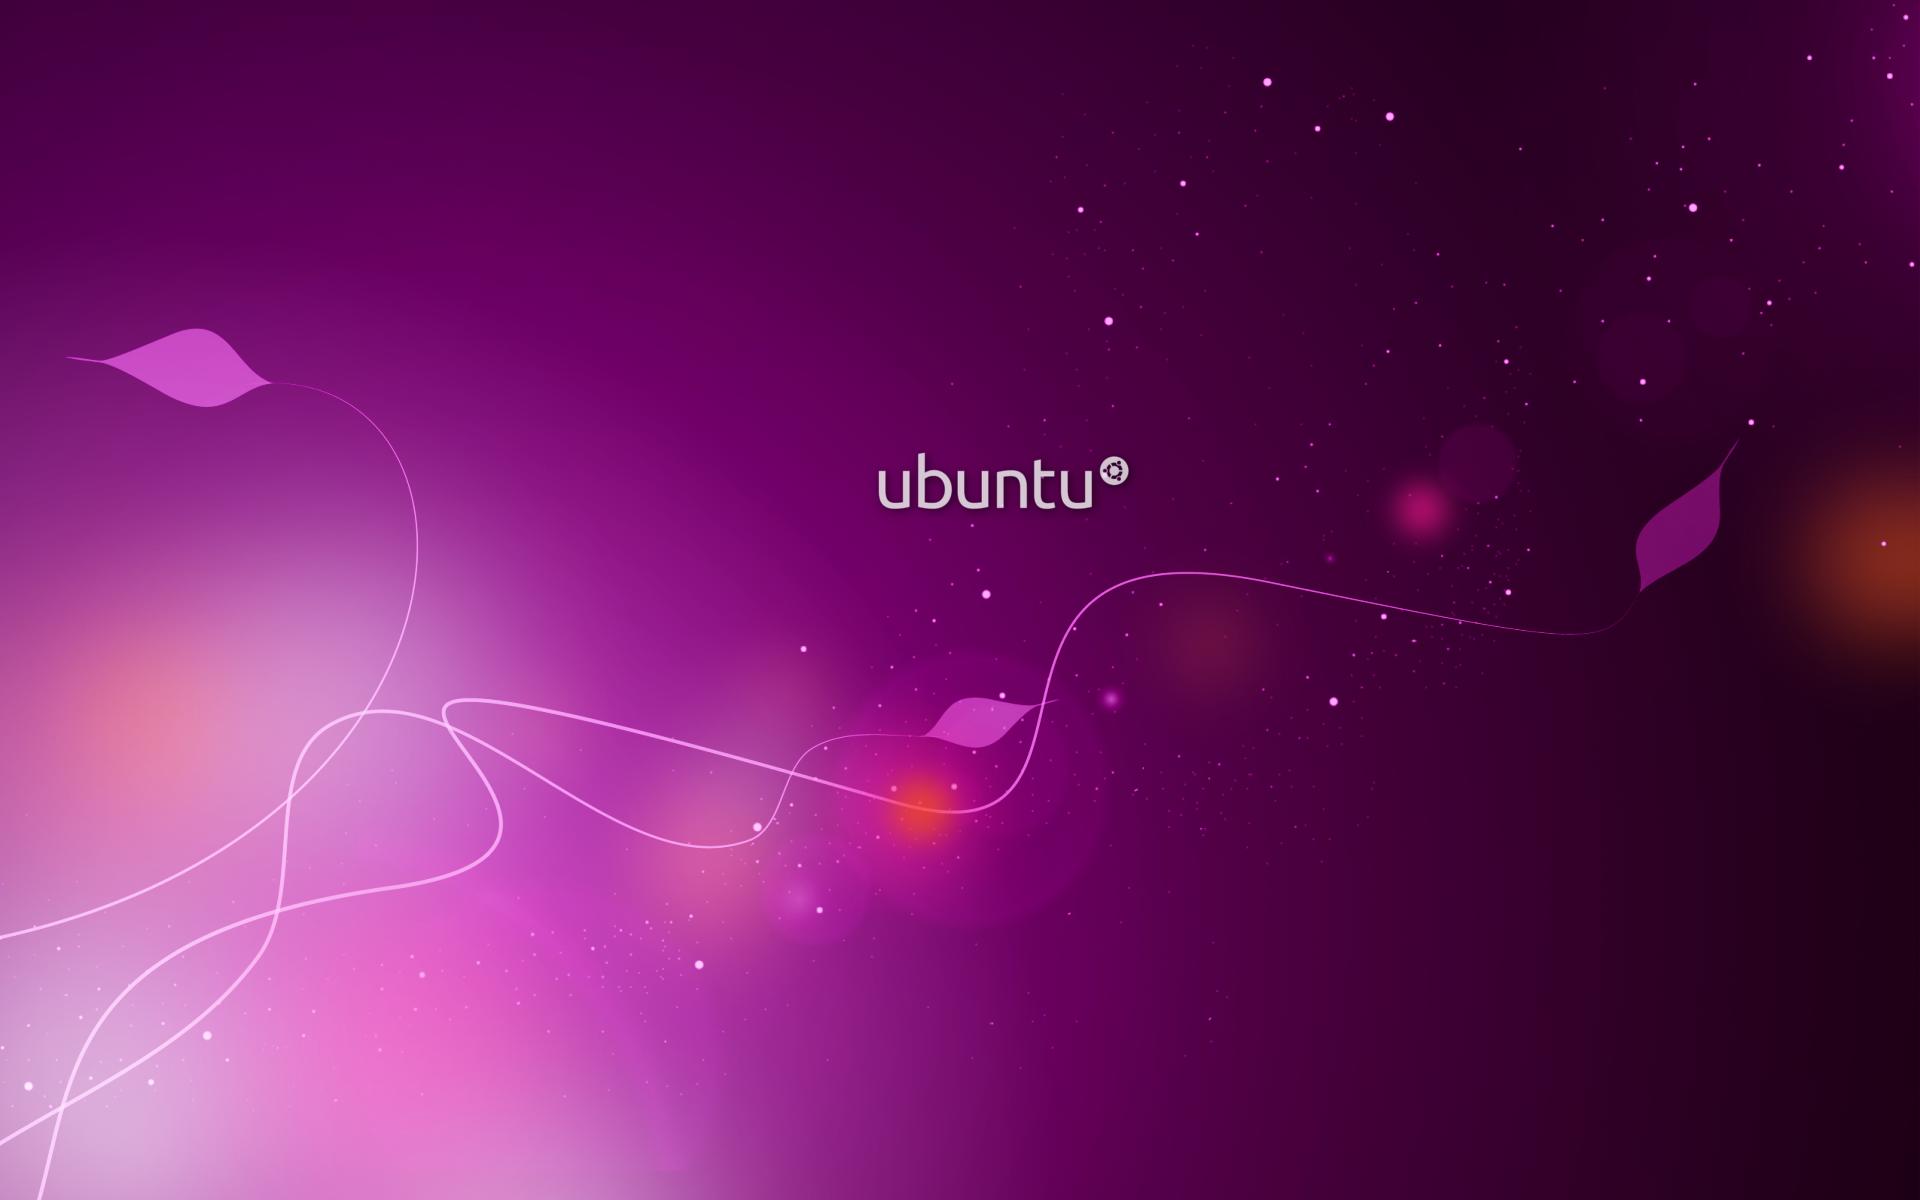 Ubuntu HD Wallpaper. fbpapa